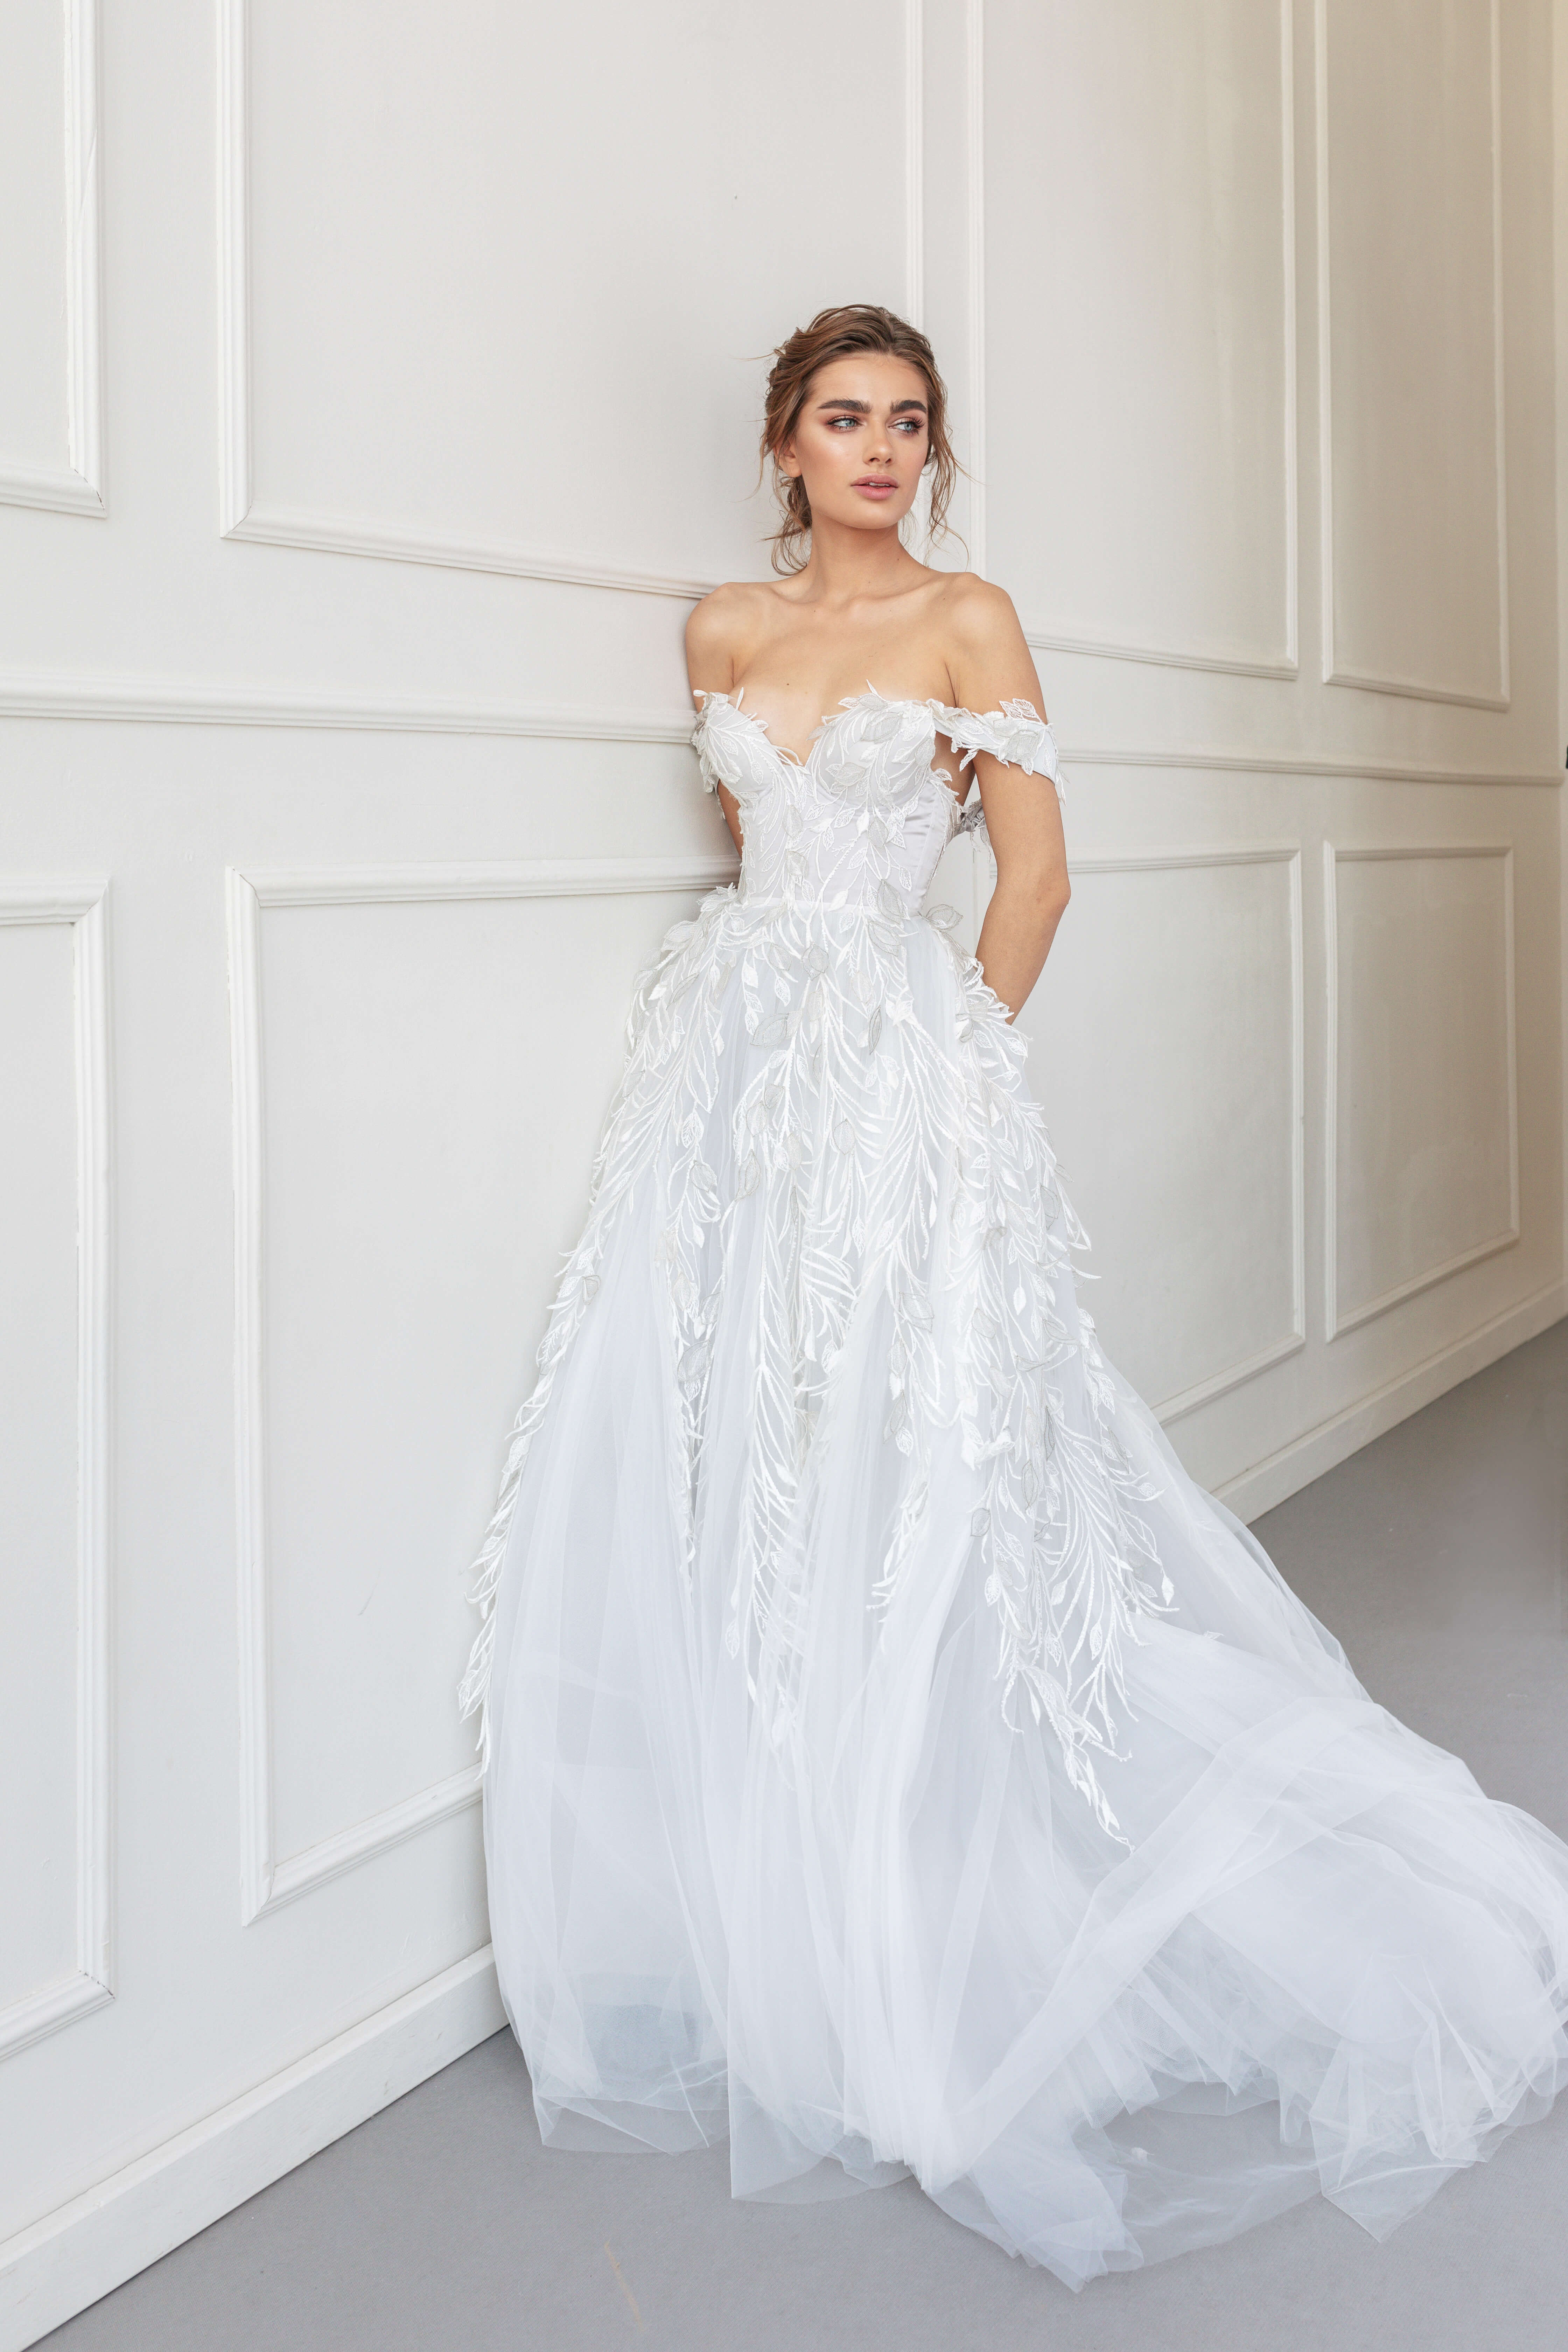 Купить свадебное платье «Маргарет» Анже Этуаль из коллекции 2020 года в салоне «Мэри Трюфель»